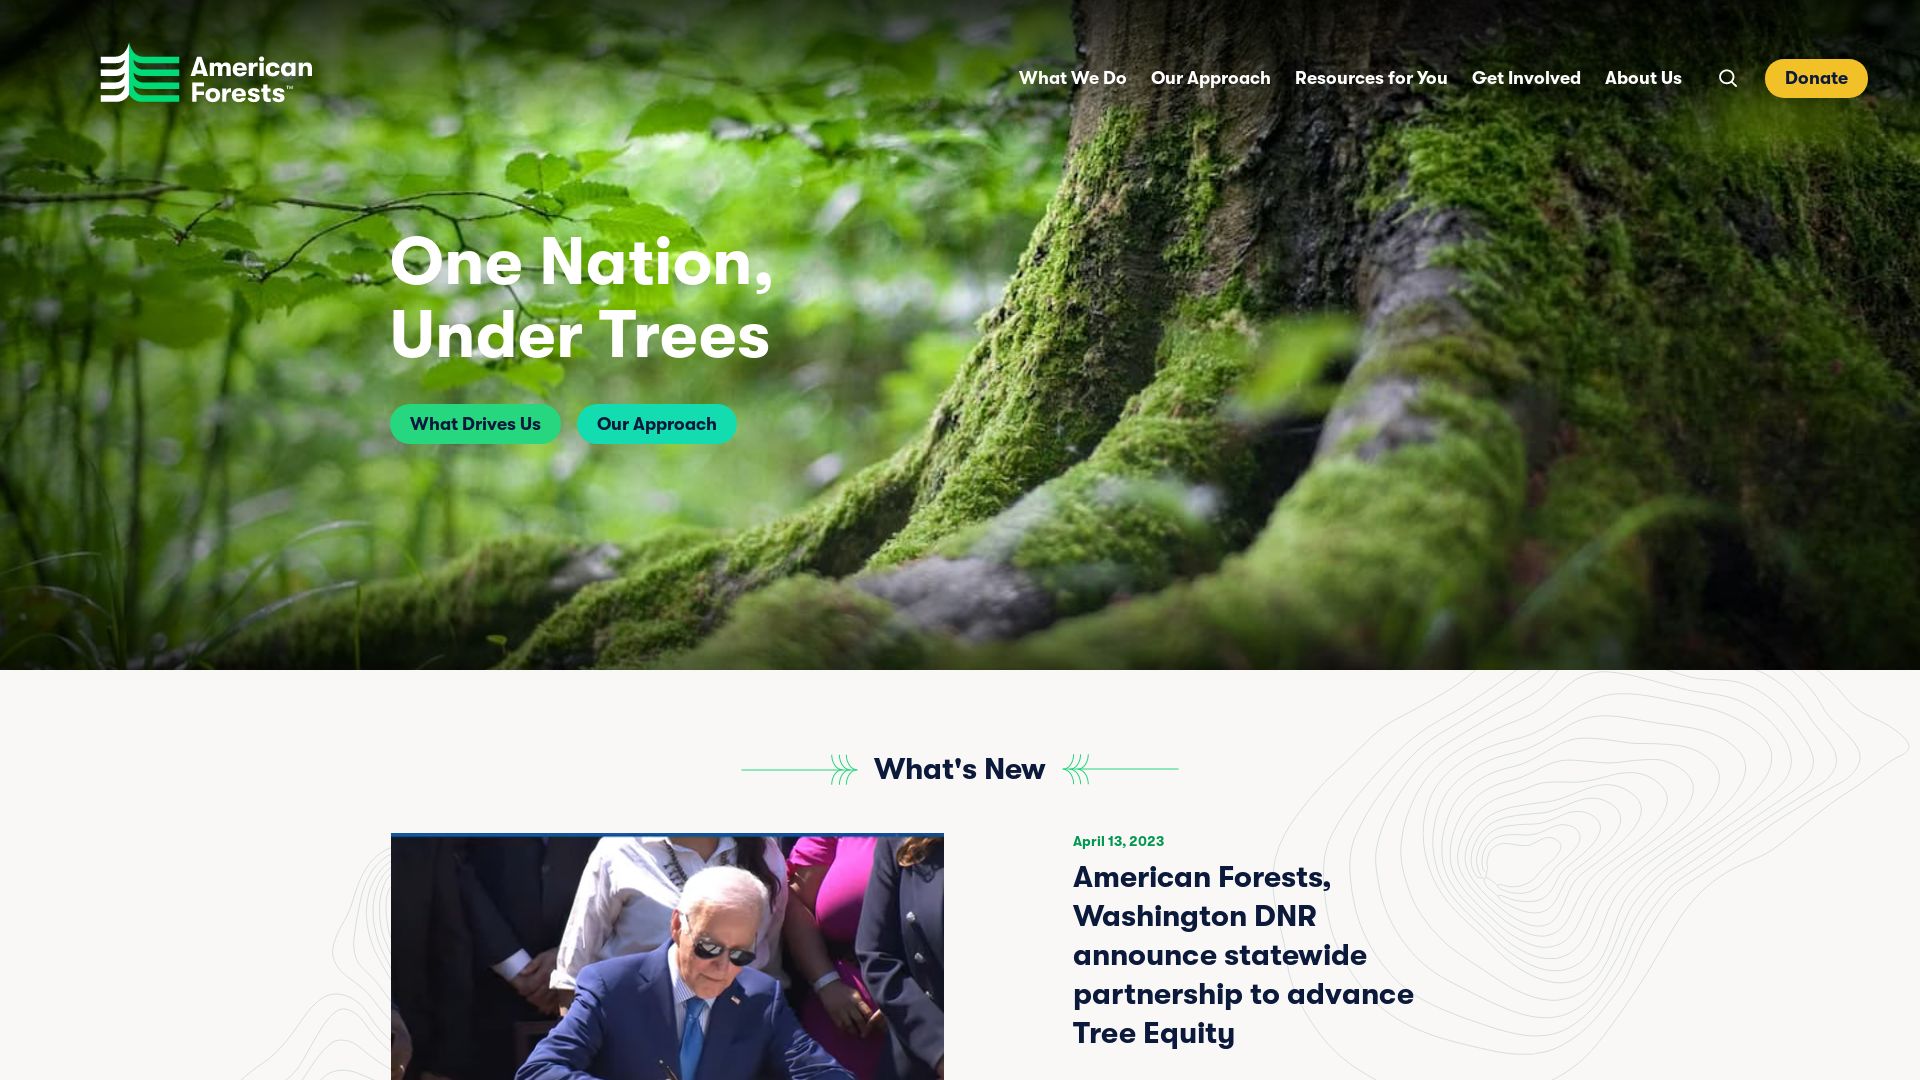 Stato del sito web americanforests.org è   ONLINE